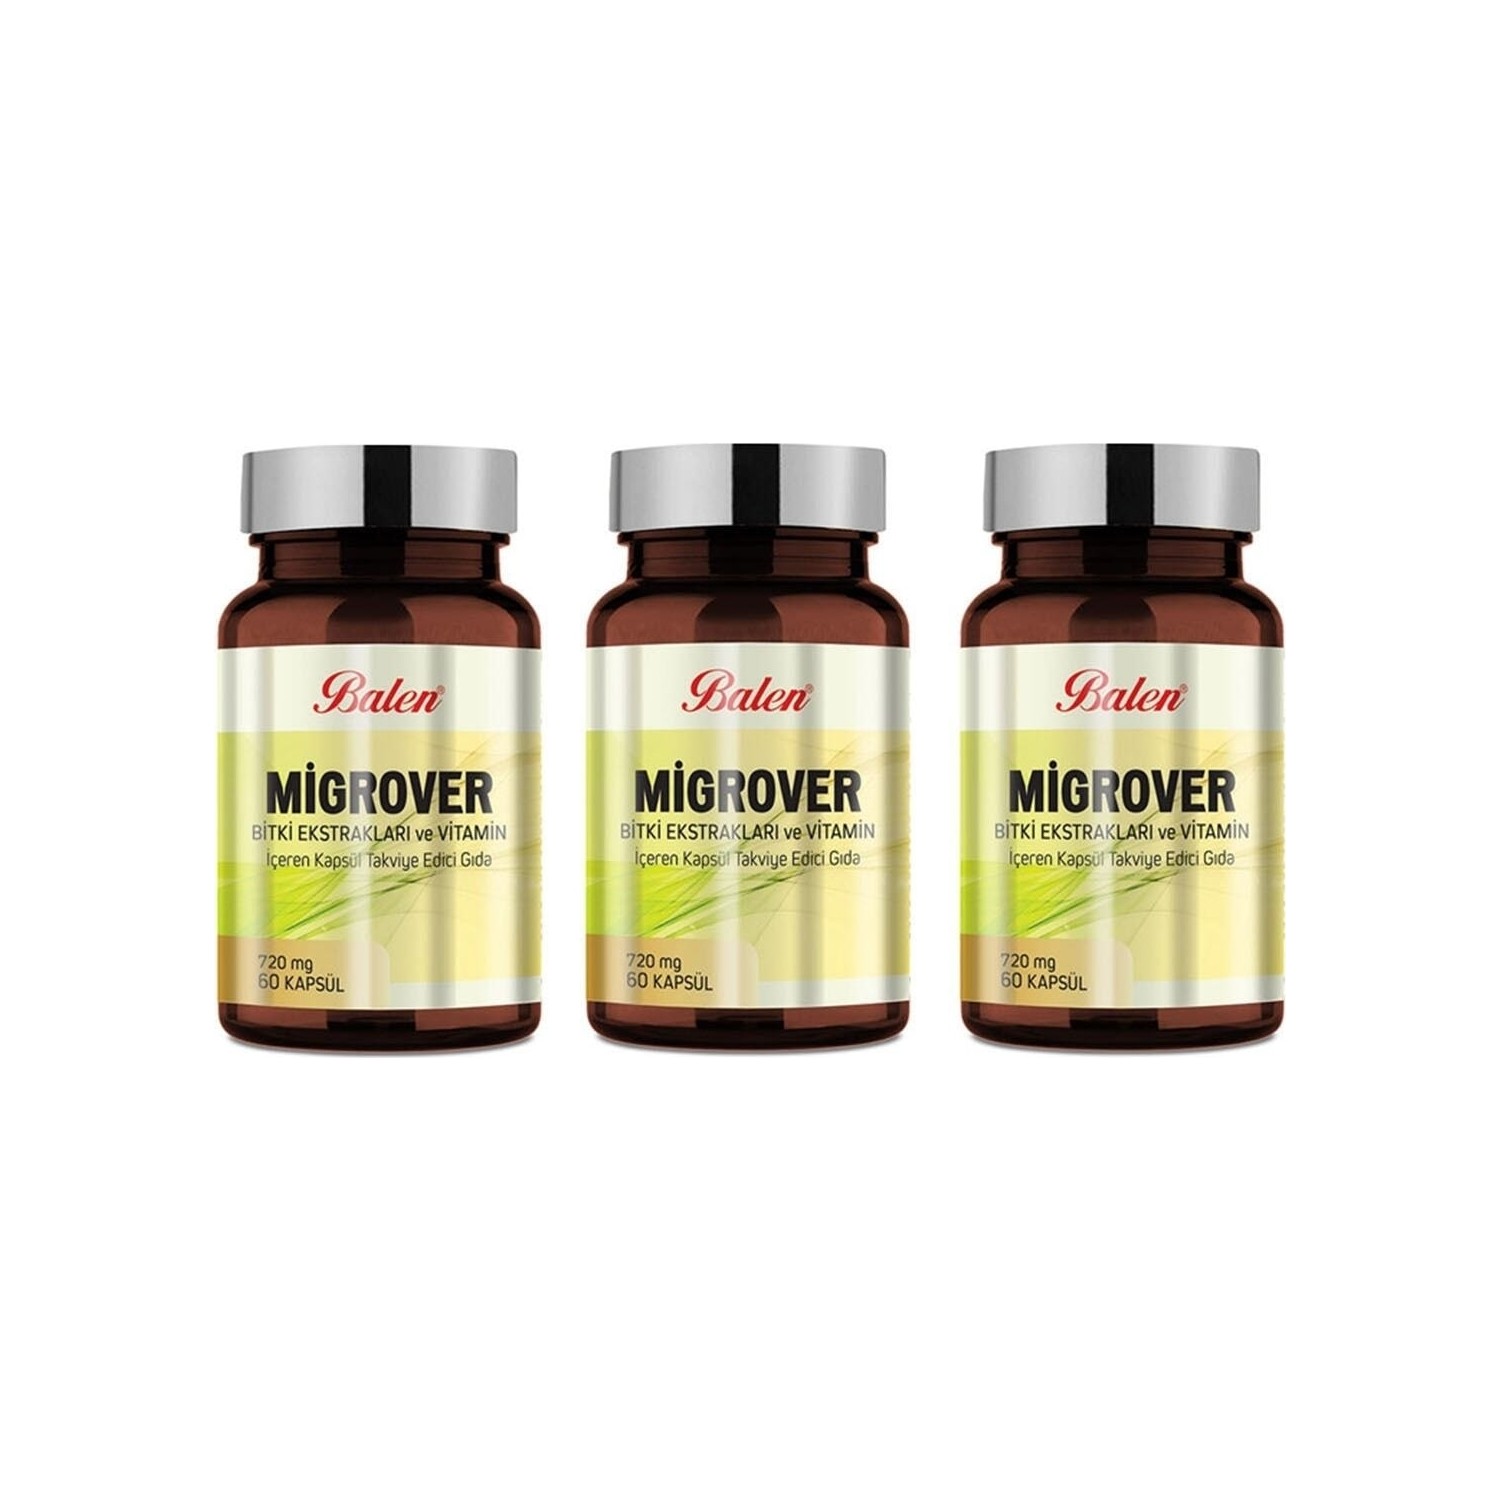 Капсулы Balen Migrover, содержащие растительные экстракты и витамины, 60 капсул, 720 мг, 3 штуки